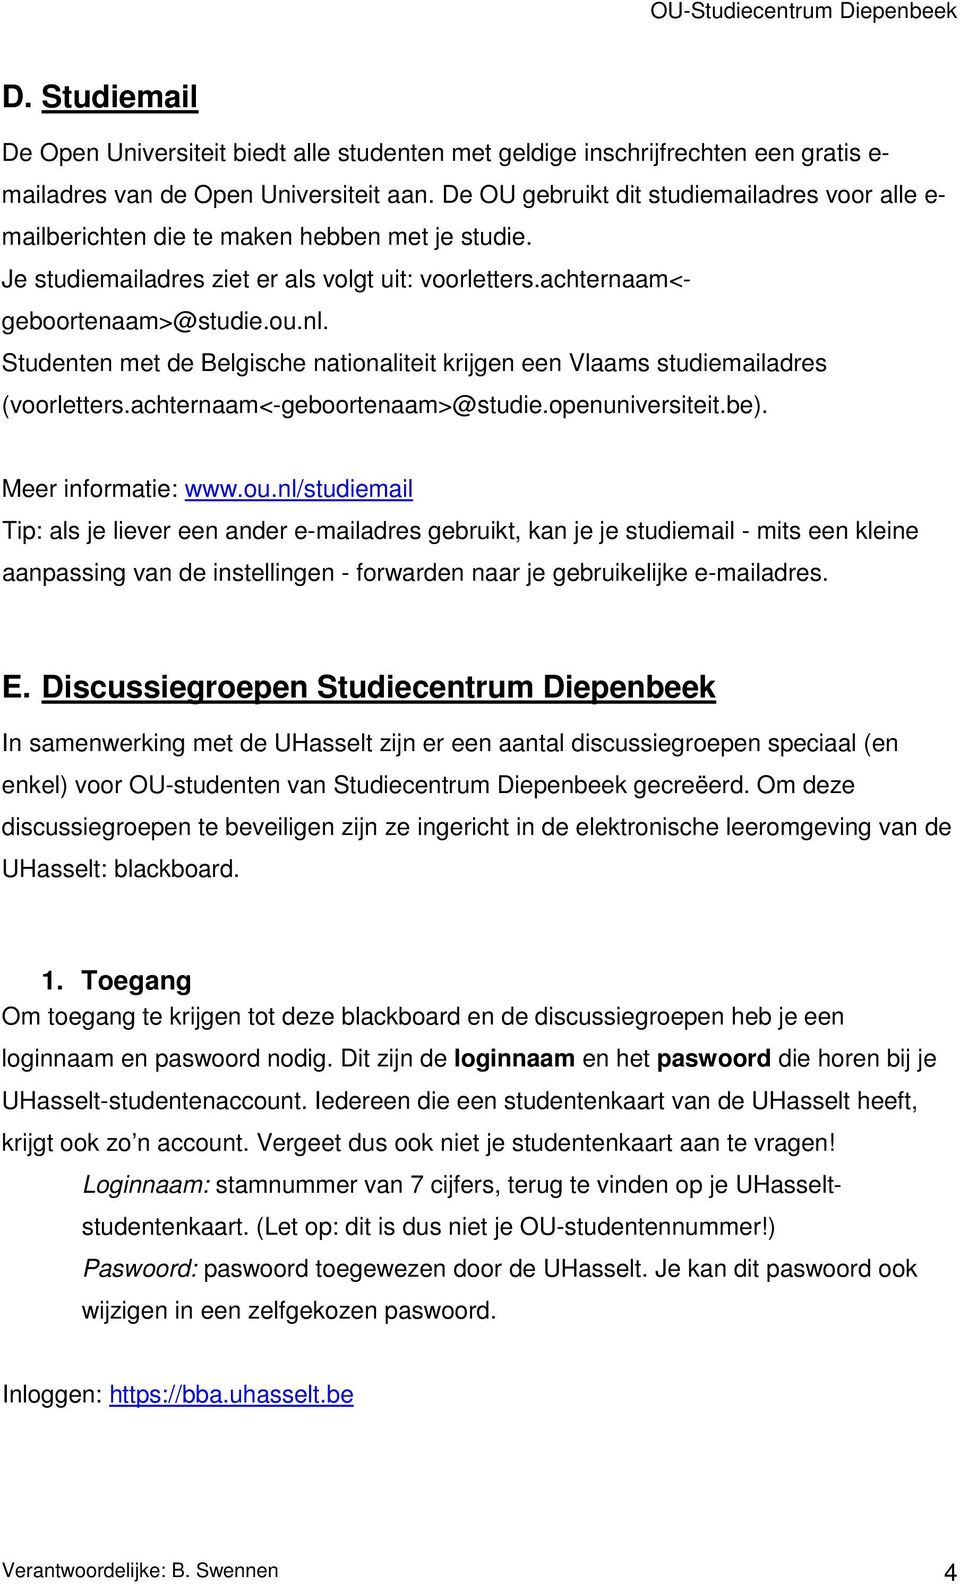 Studenten met de Belgische nationaliteit krijgen een Vlaams studiemailadres (voorletters.achternaam<-geboortenaam>@studie.openuniversiteit.be). Meer informatie: www.ou.